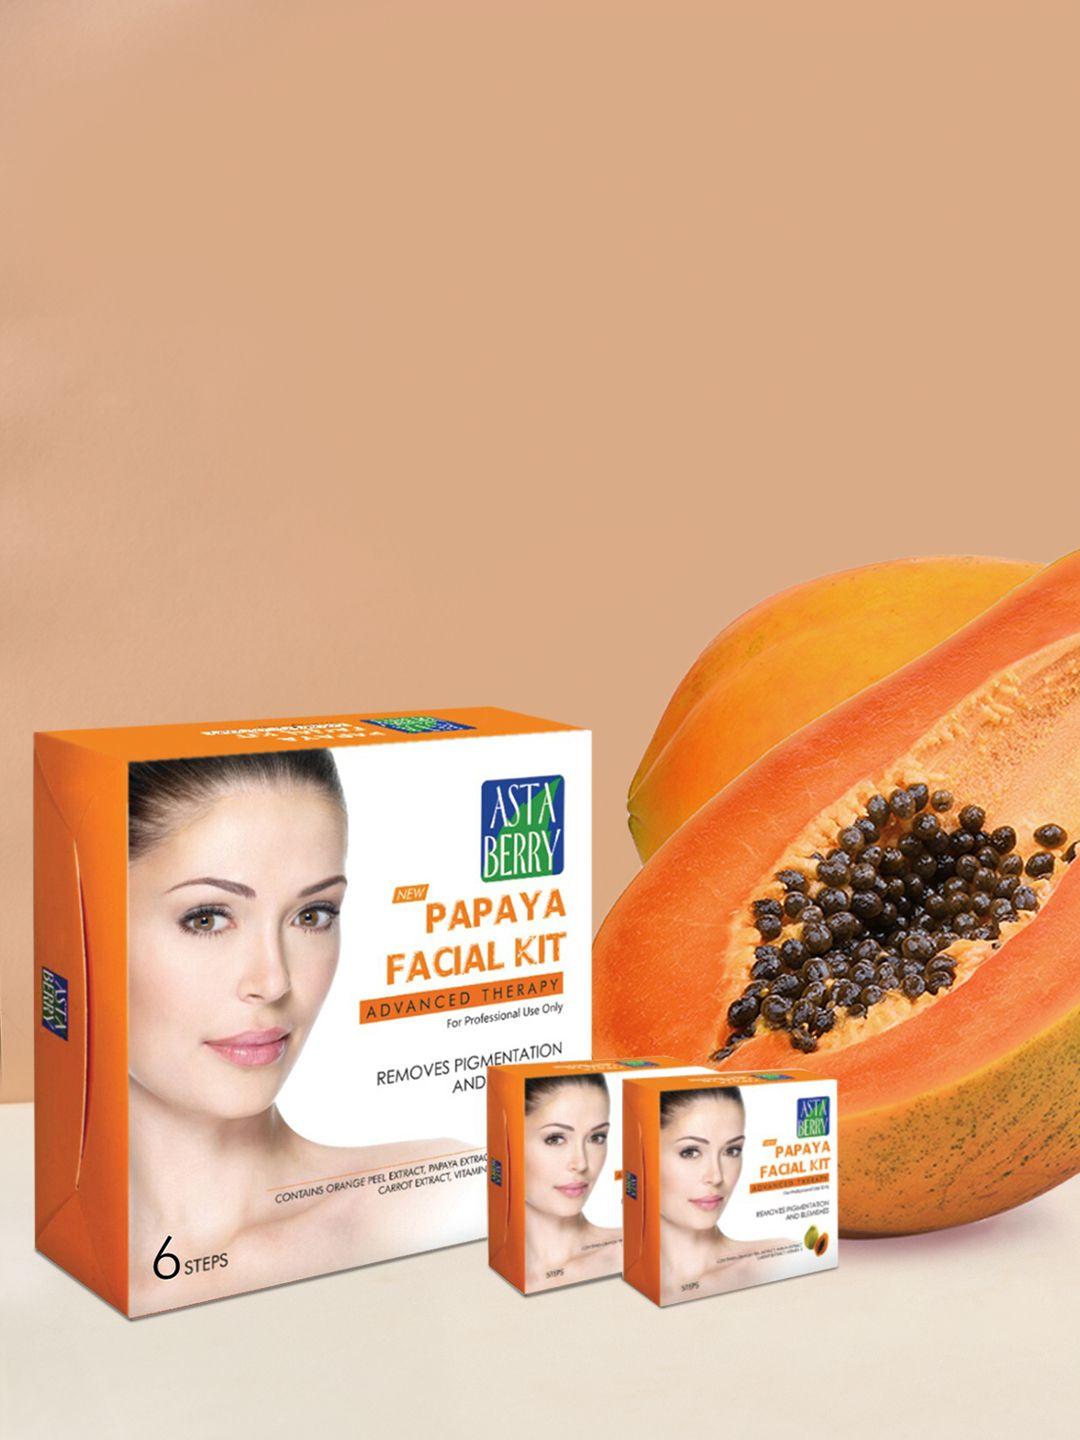 astaberry papaya facial kit